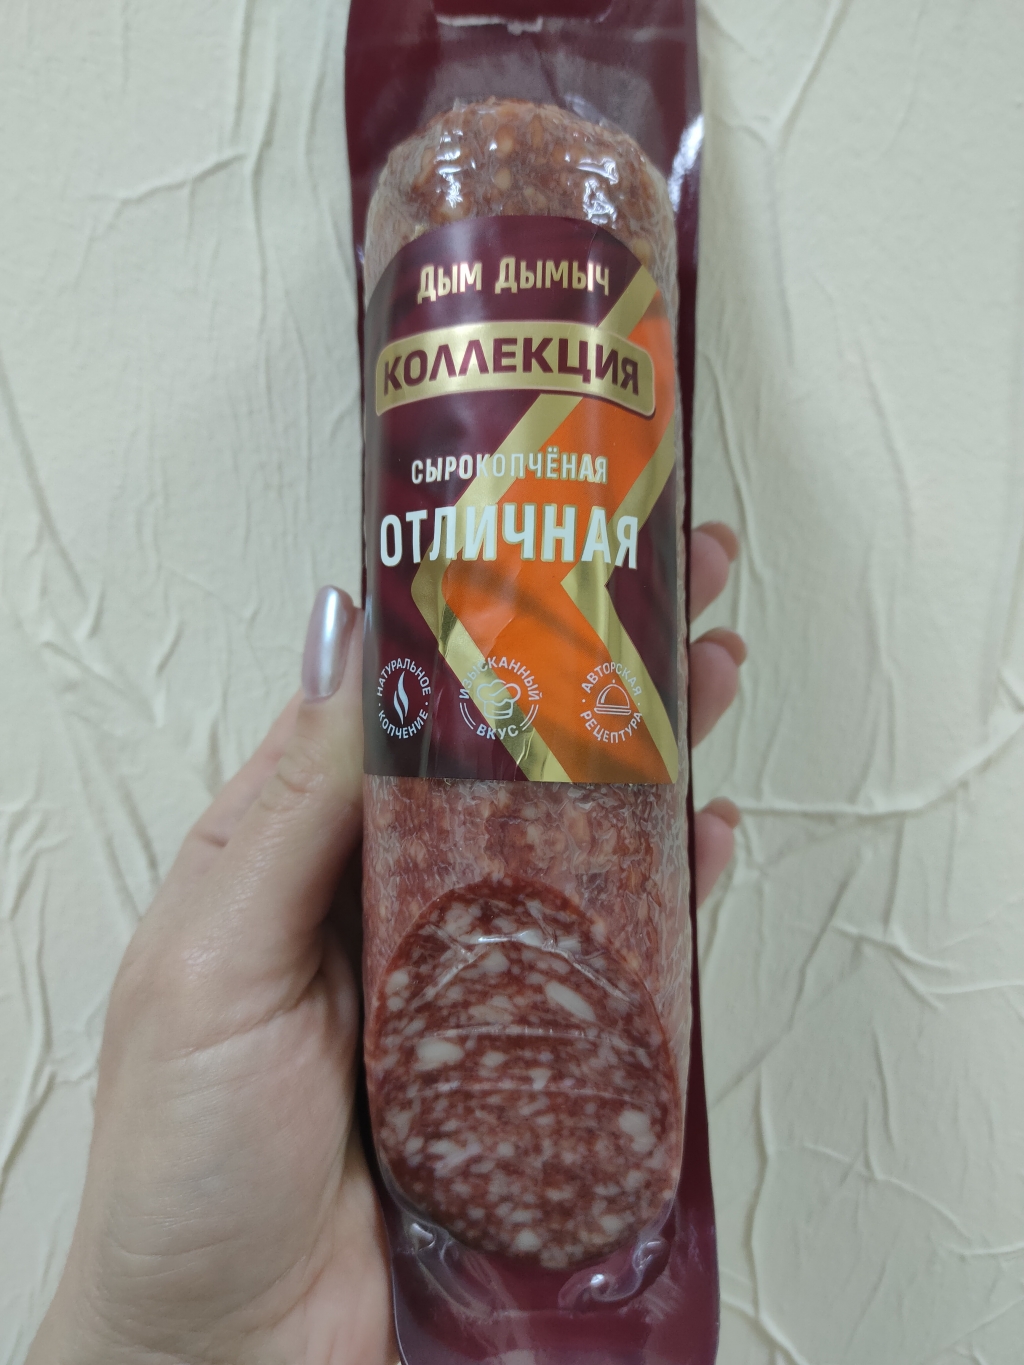 ДымДымыч - "Отличная" сырокопченая колбаска от "Дым Дымыча"